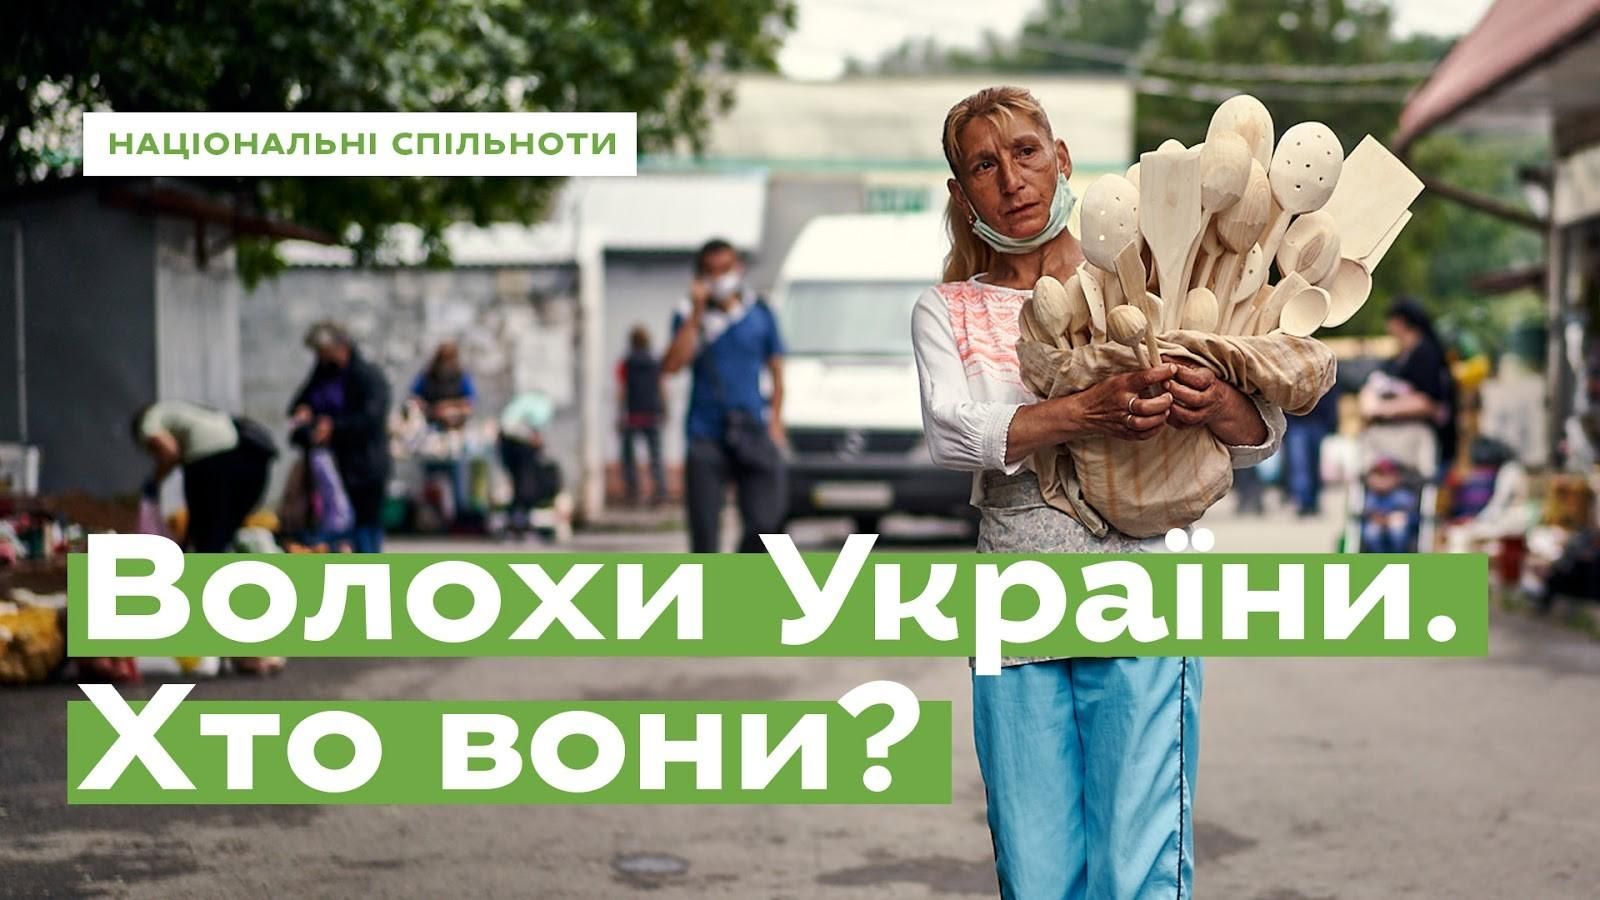 Дві мови і жодної офіційної версії про походження: Ukraїner дослідив, хто такі волохи України